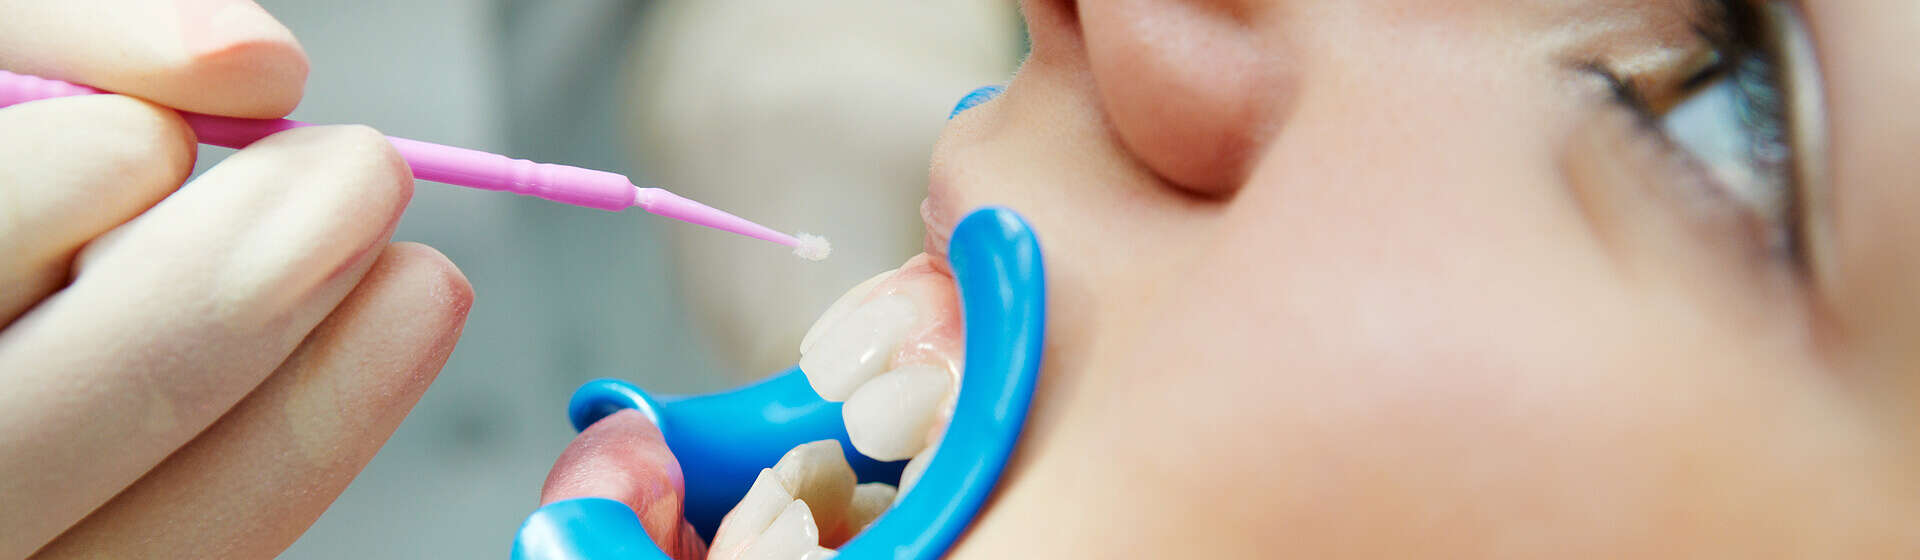 Процедура форирования зубов у ребенка